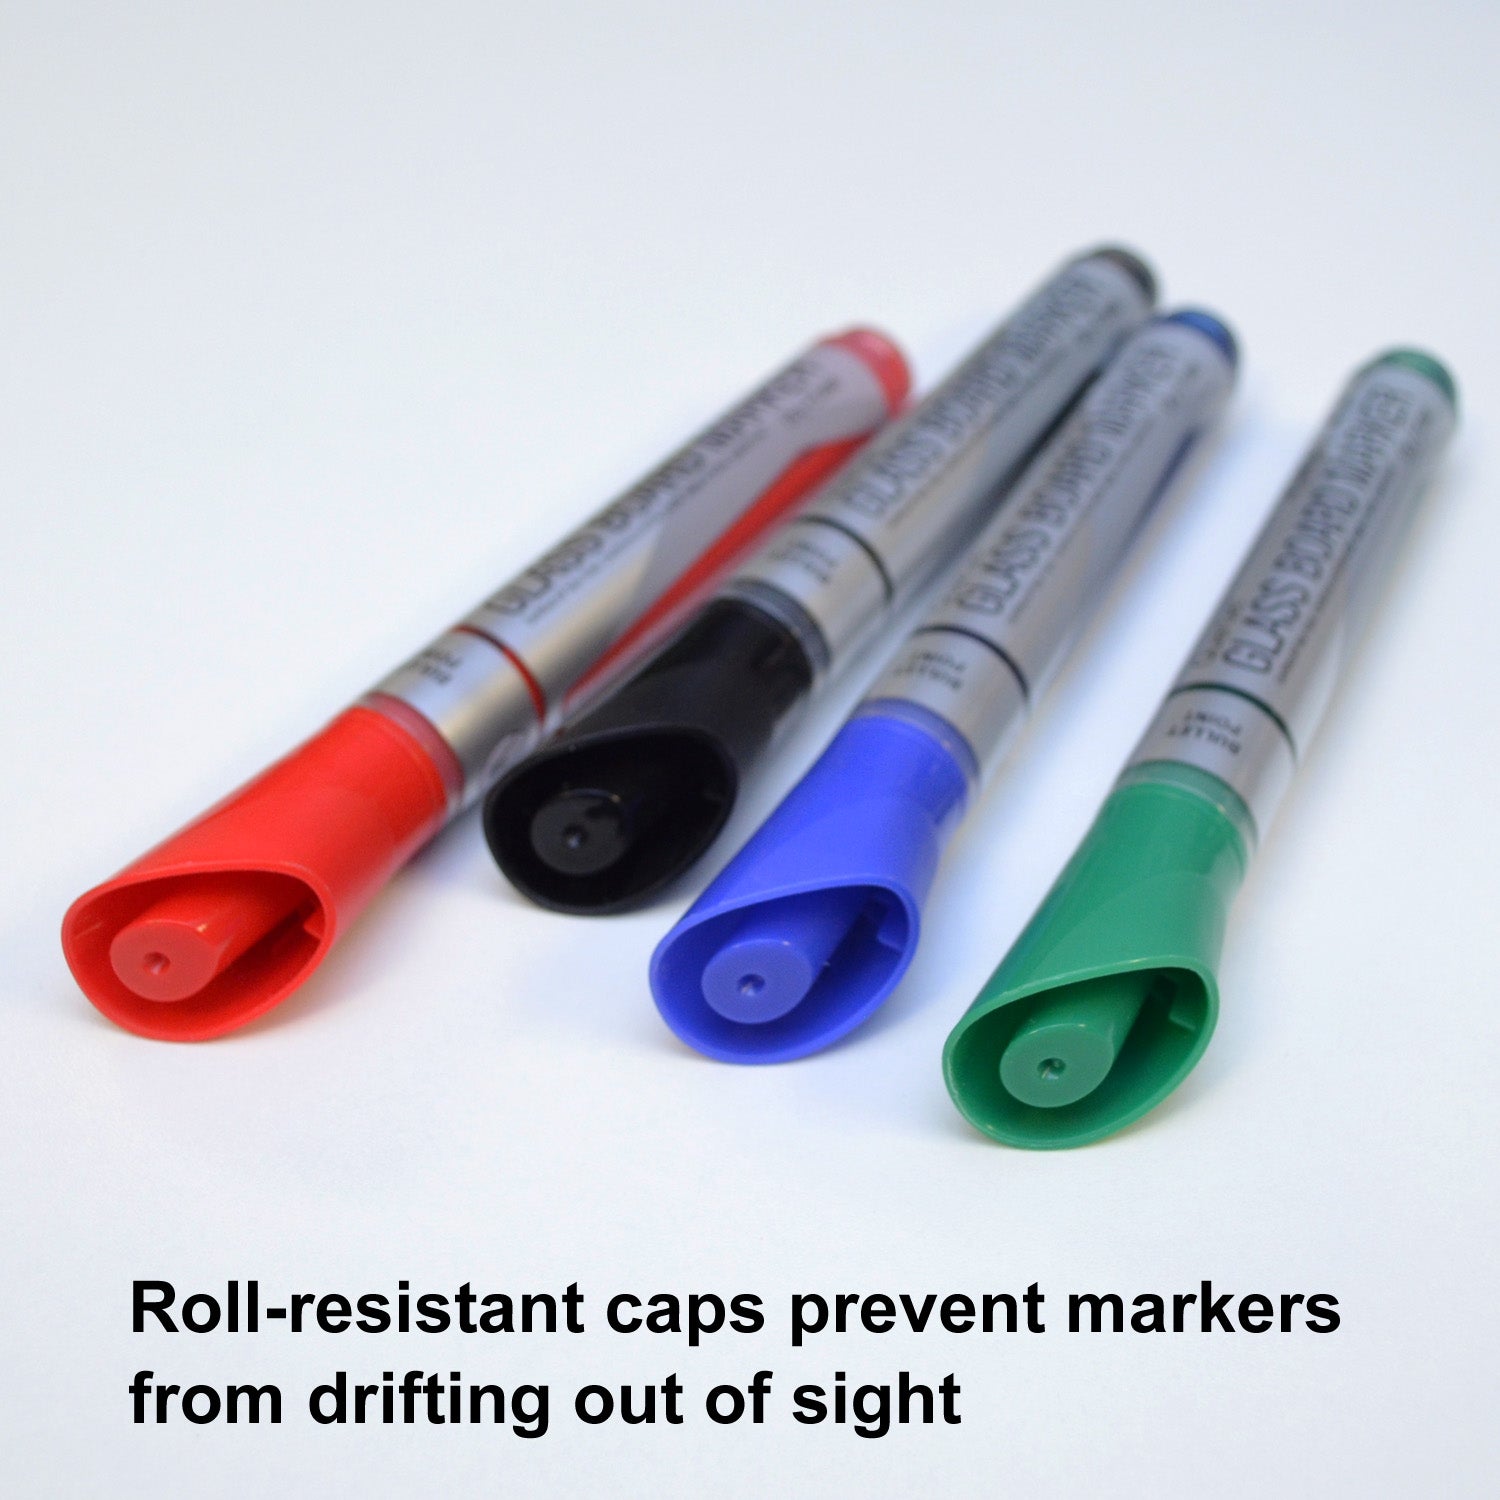 Quartet Premium Glass Board Dry Erase Marker, Fine Bullet Tip, Assorted Colors, 4/Pack